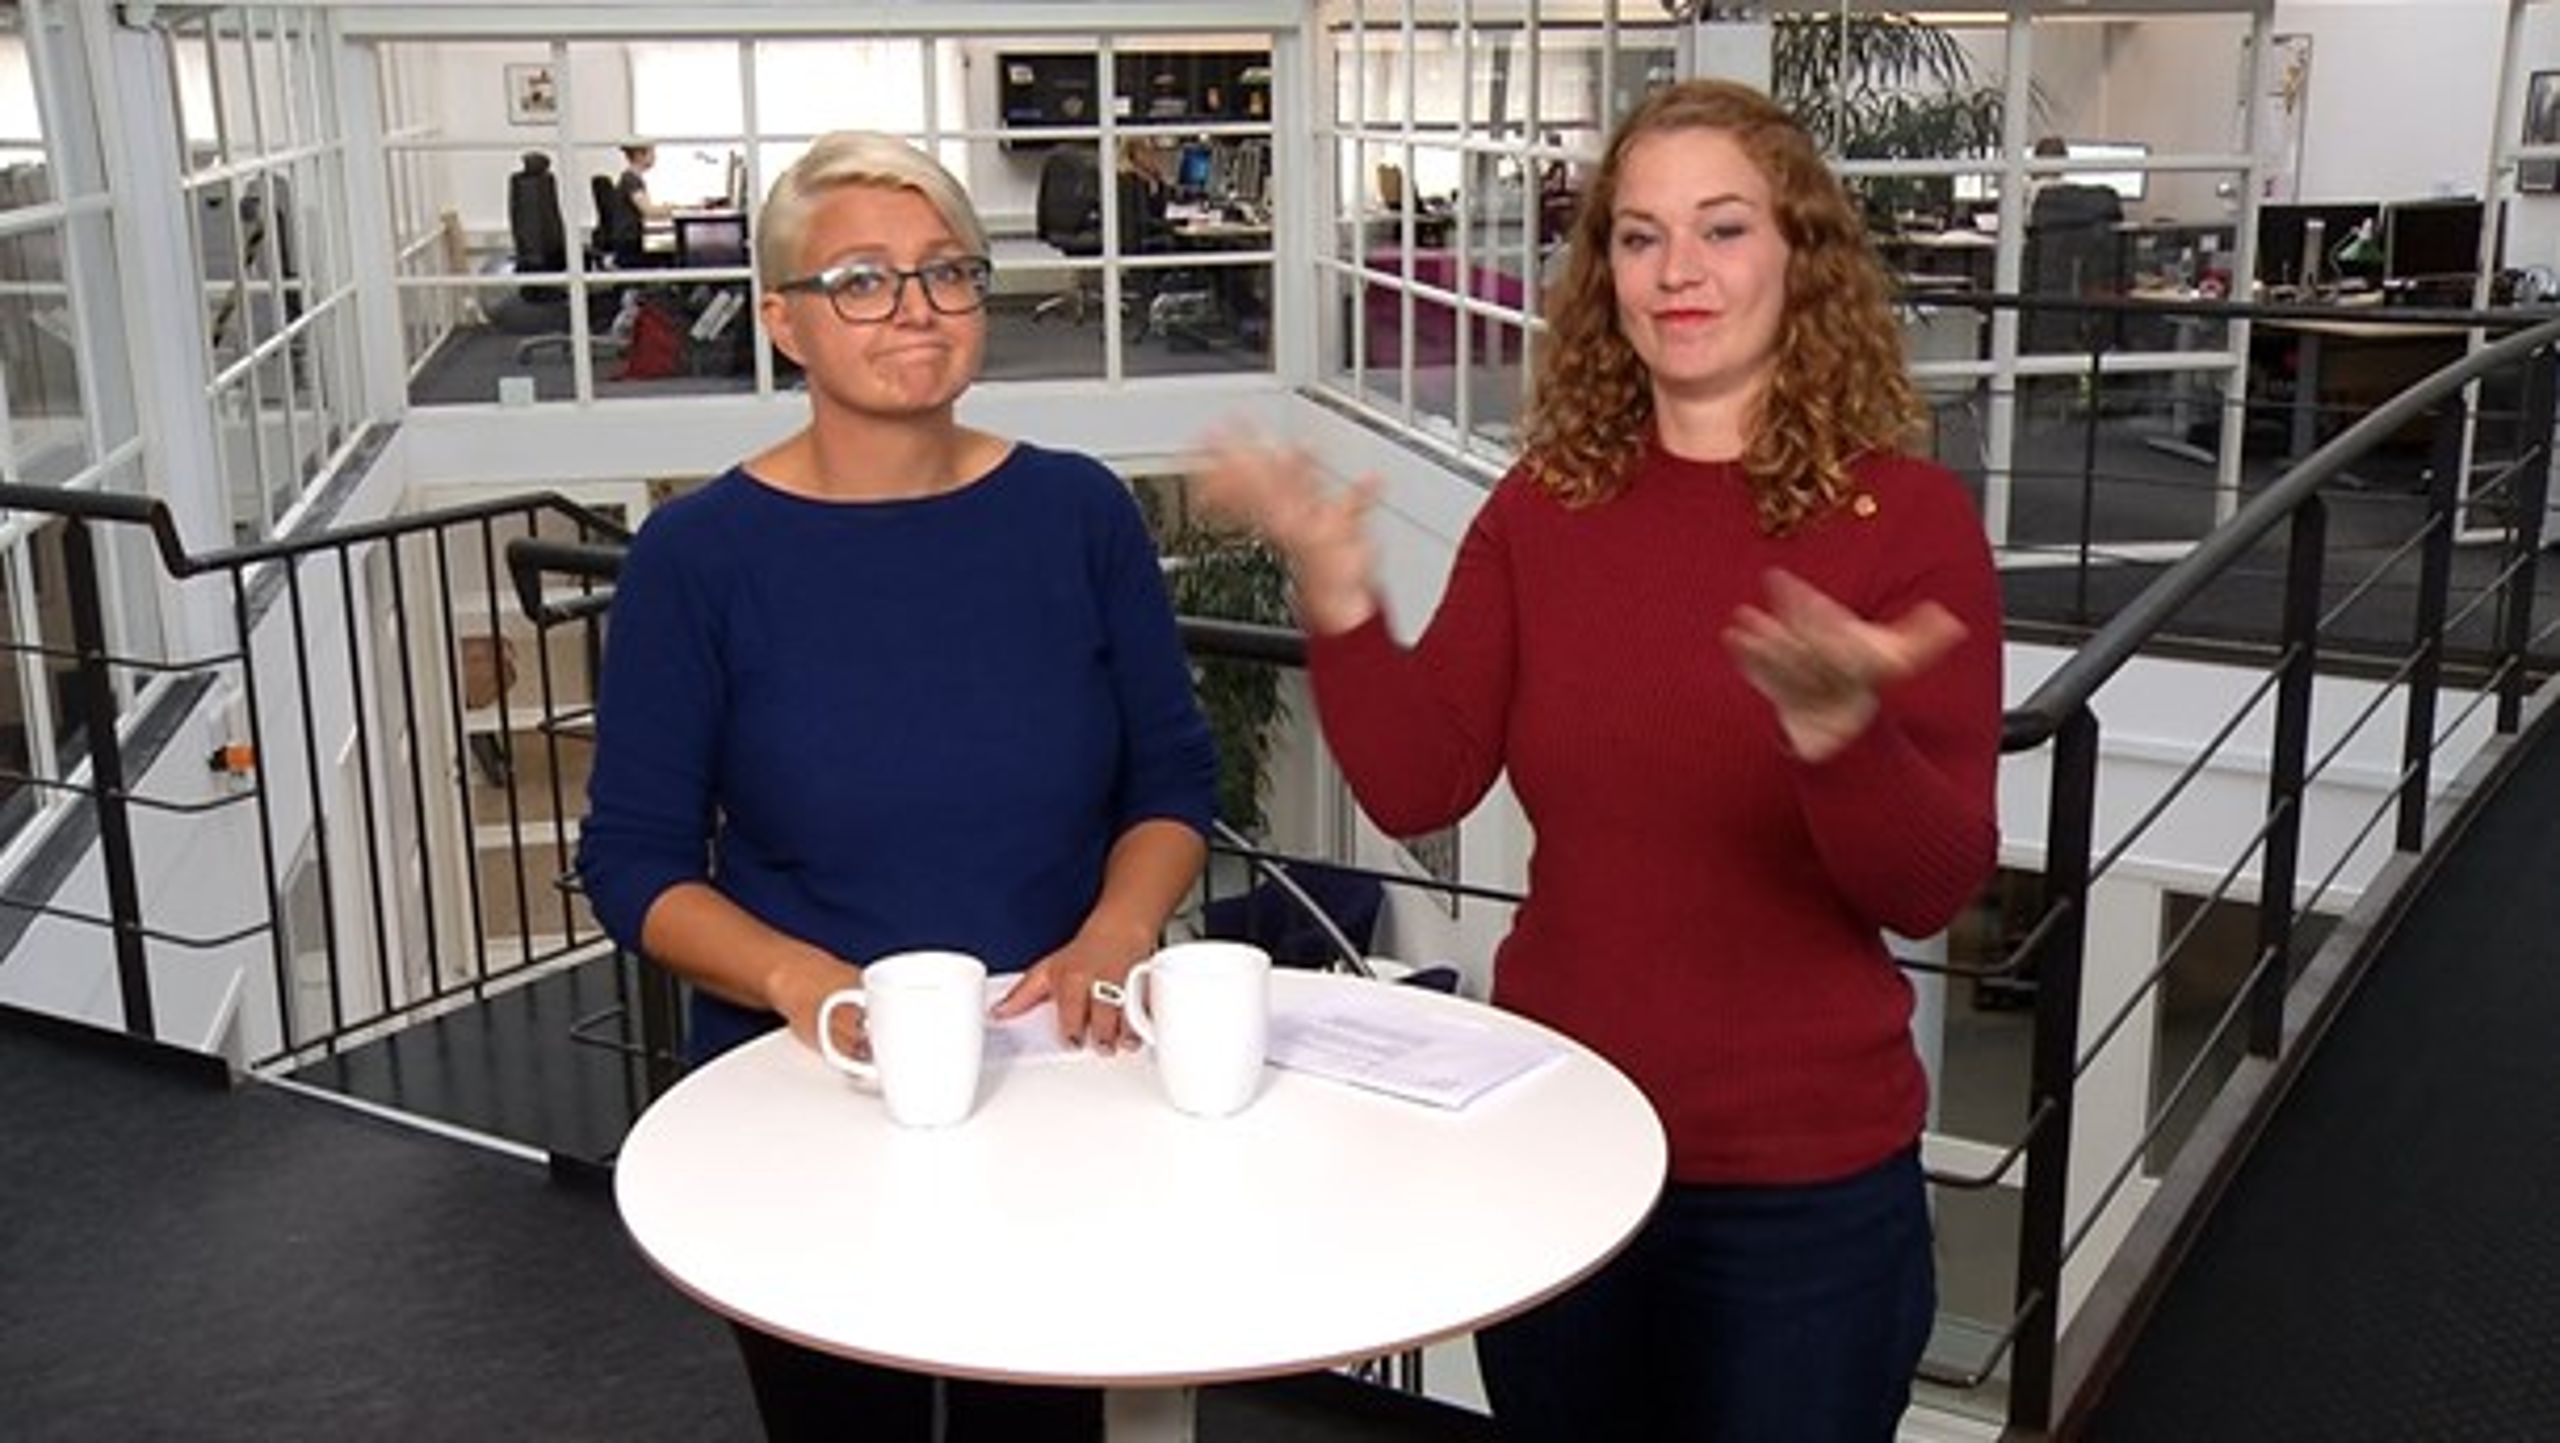 Studieværterne Maja Toft og Olivia Thyge Egeber kommer nok til at se sig om efter et andet job, hvis regeringens finanslovsforslag gennemføres. 21 medarbejdere på Døvefilm producerer ca. 35 timers tv om året.<br>